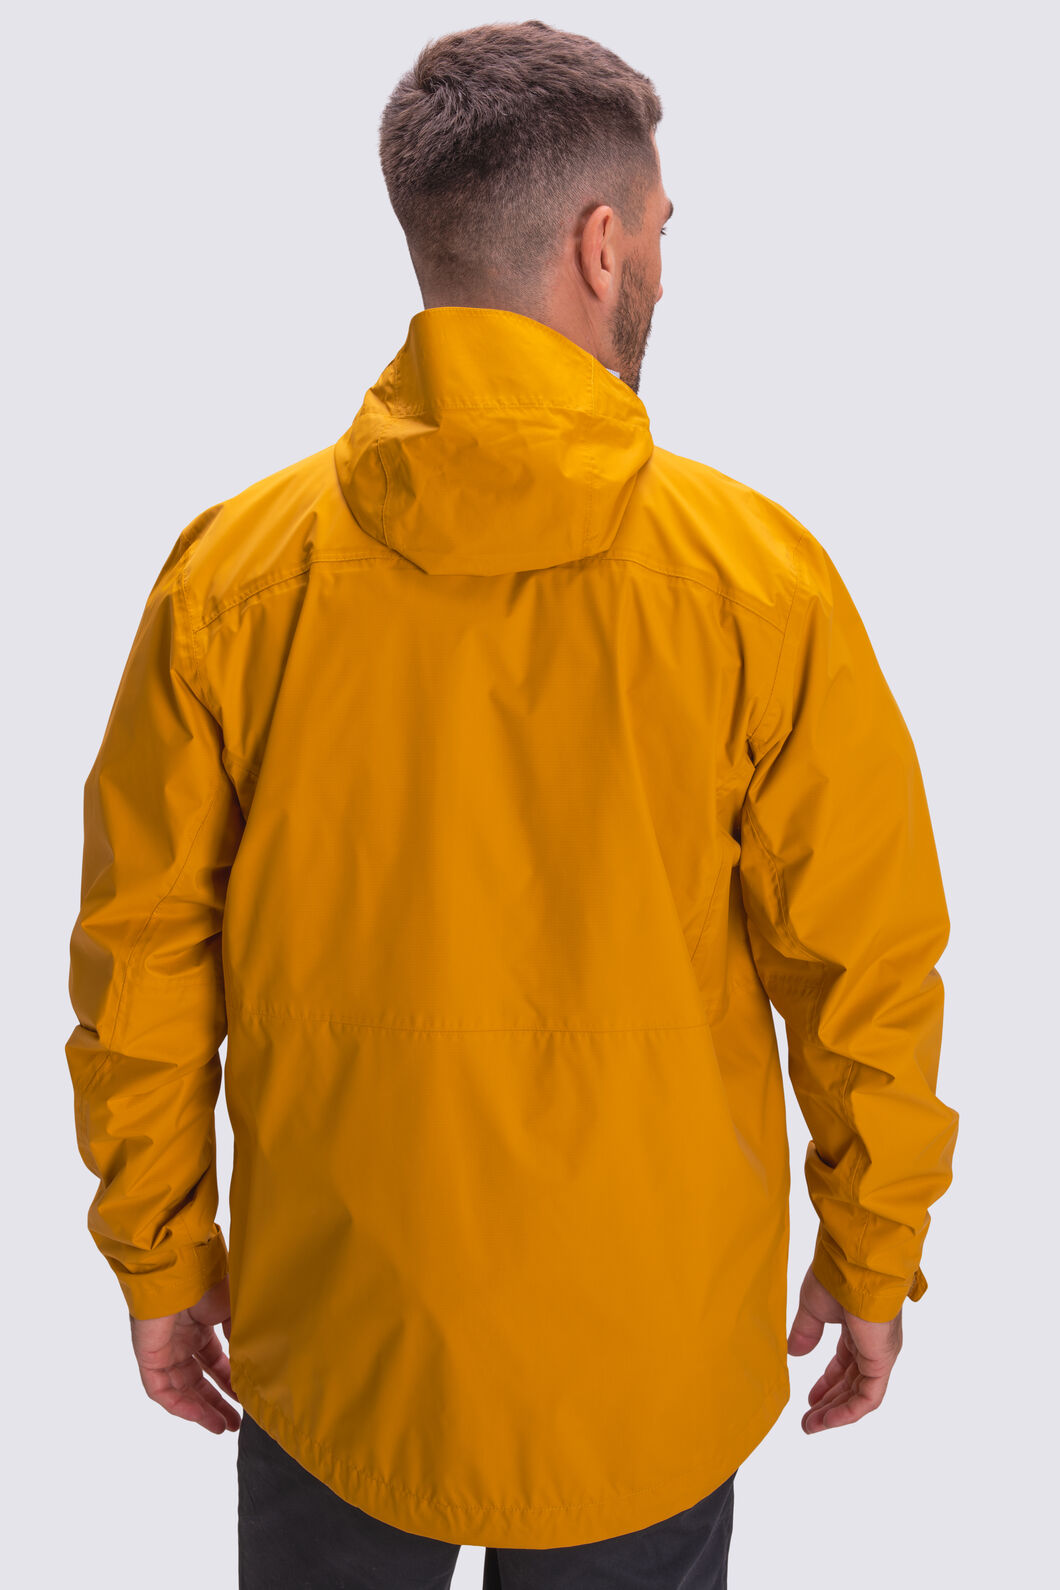 CLUB SEVENTY TWO Rain Suits for Men Women Waterproof Heavy Duty Raincoat  Fishing Rain Gear Jacket and Pants Hideaway Hood